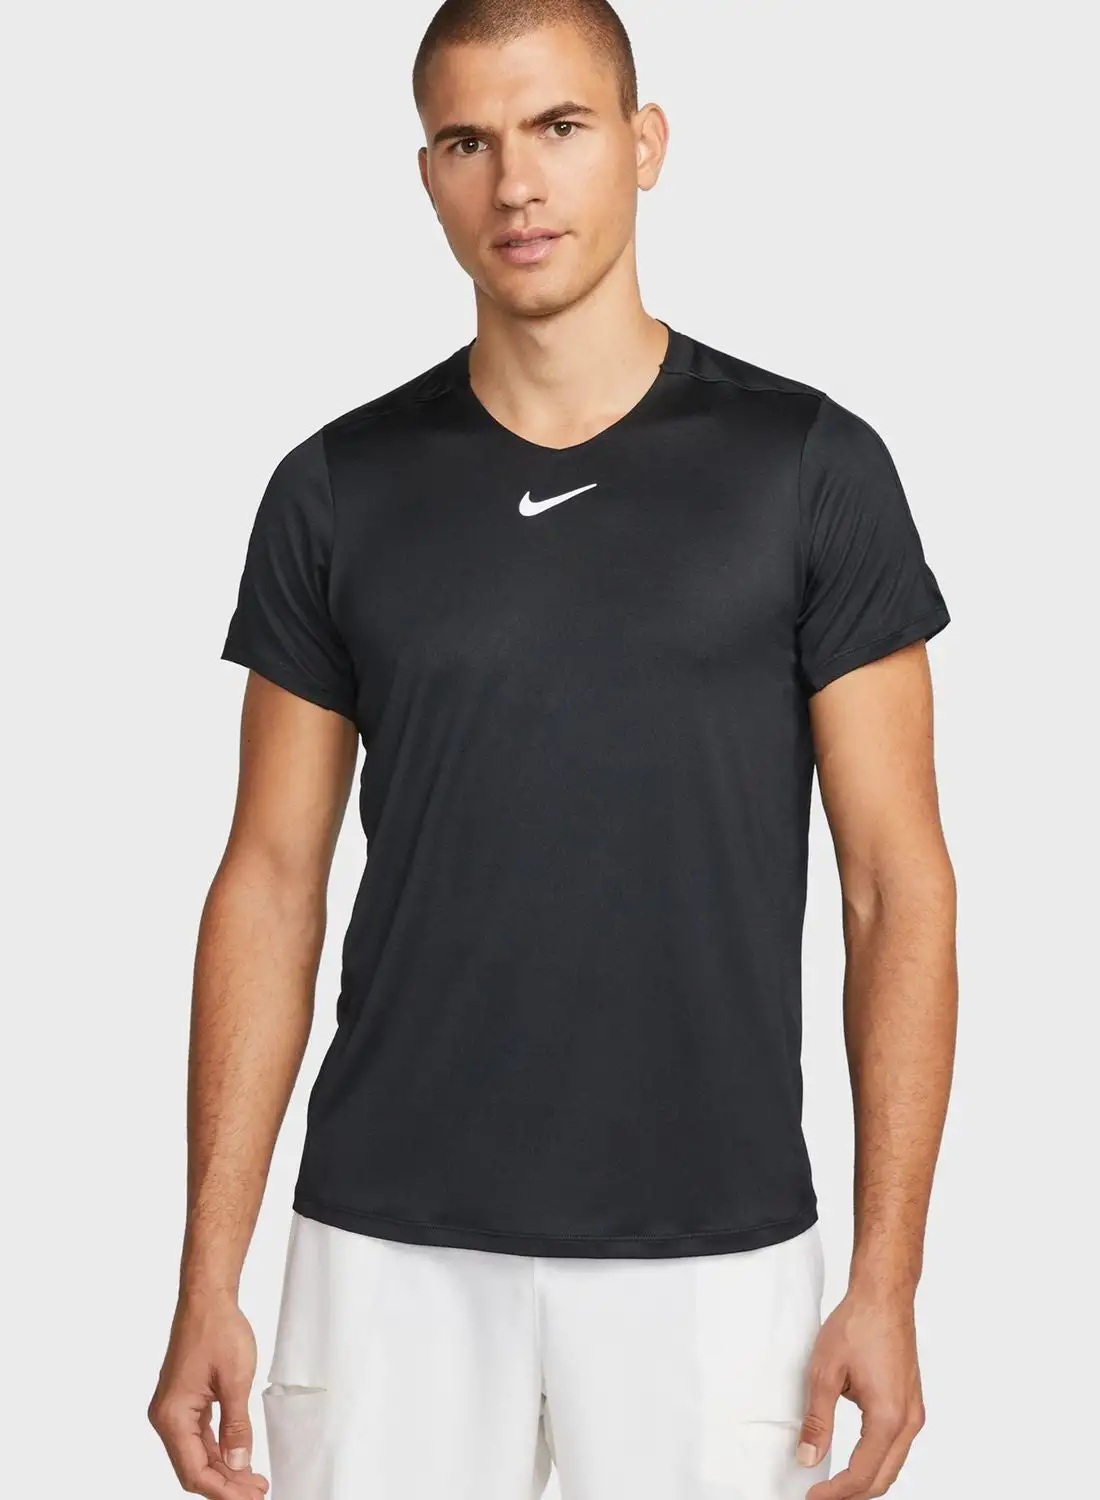 Nike Dri-Fit Advantage T-Shirt